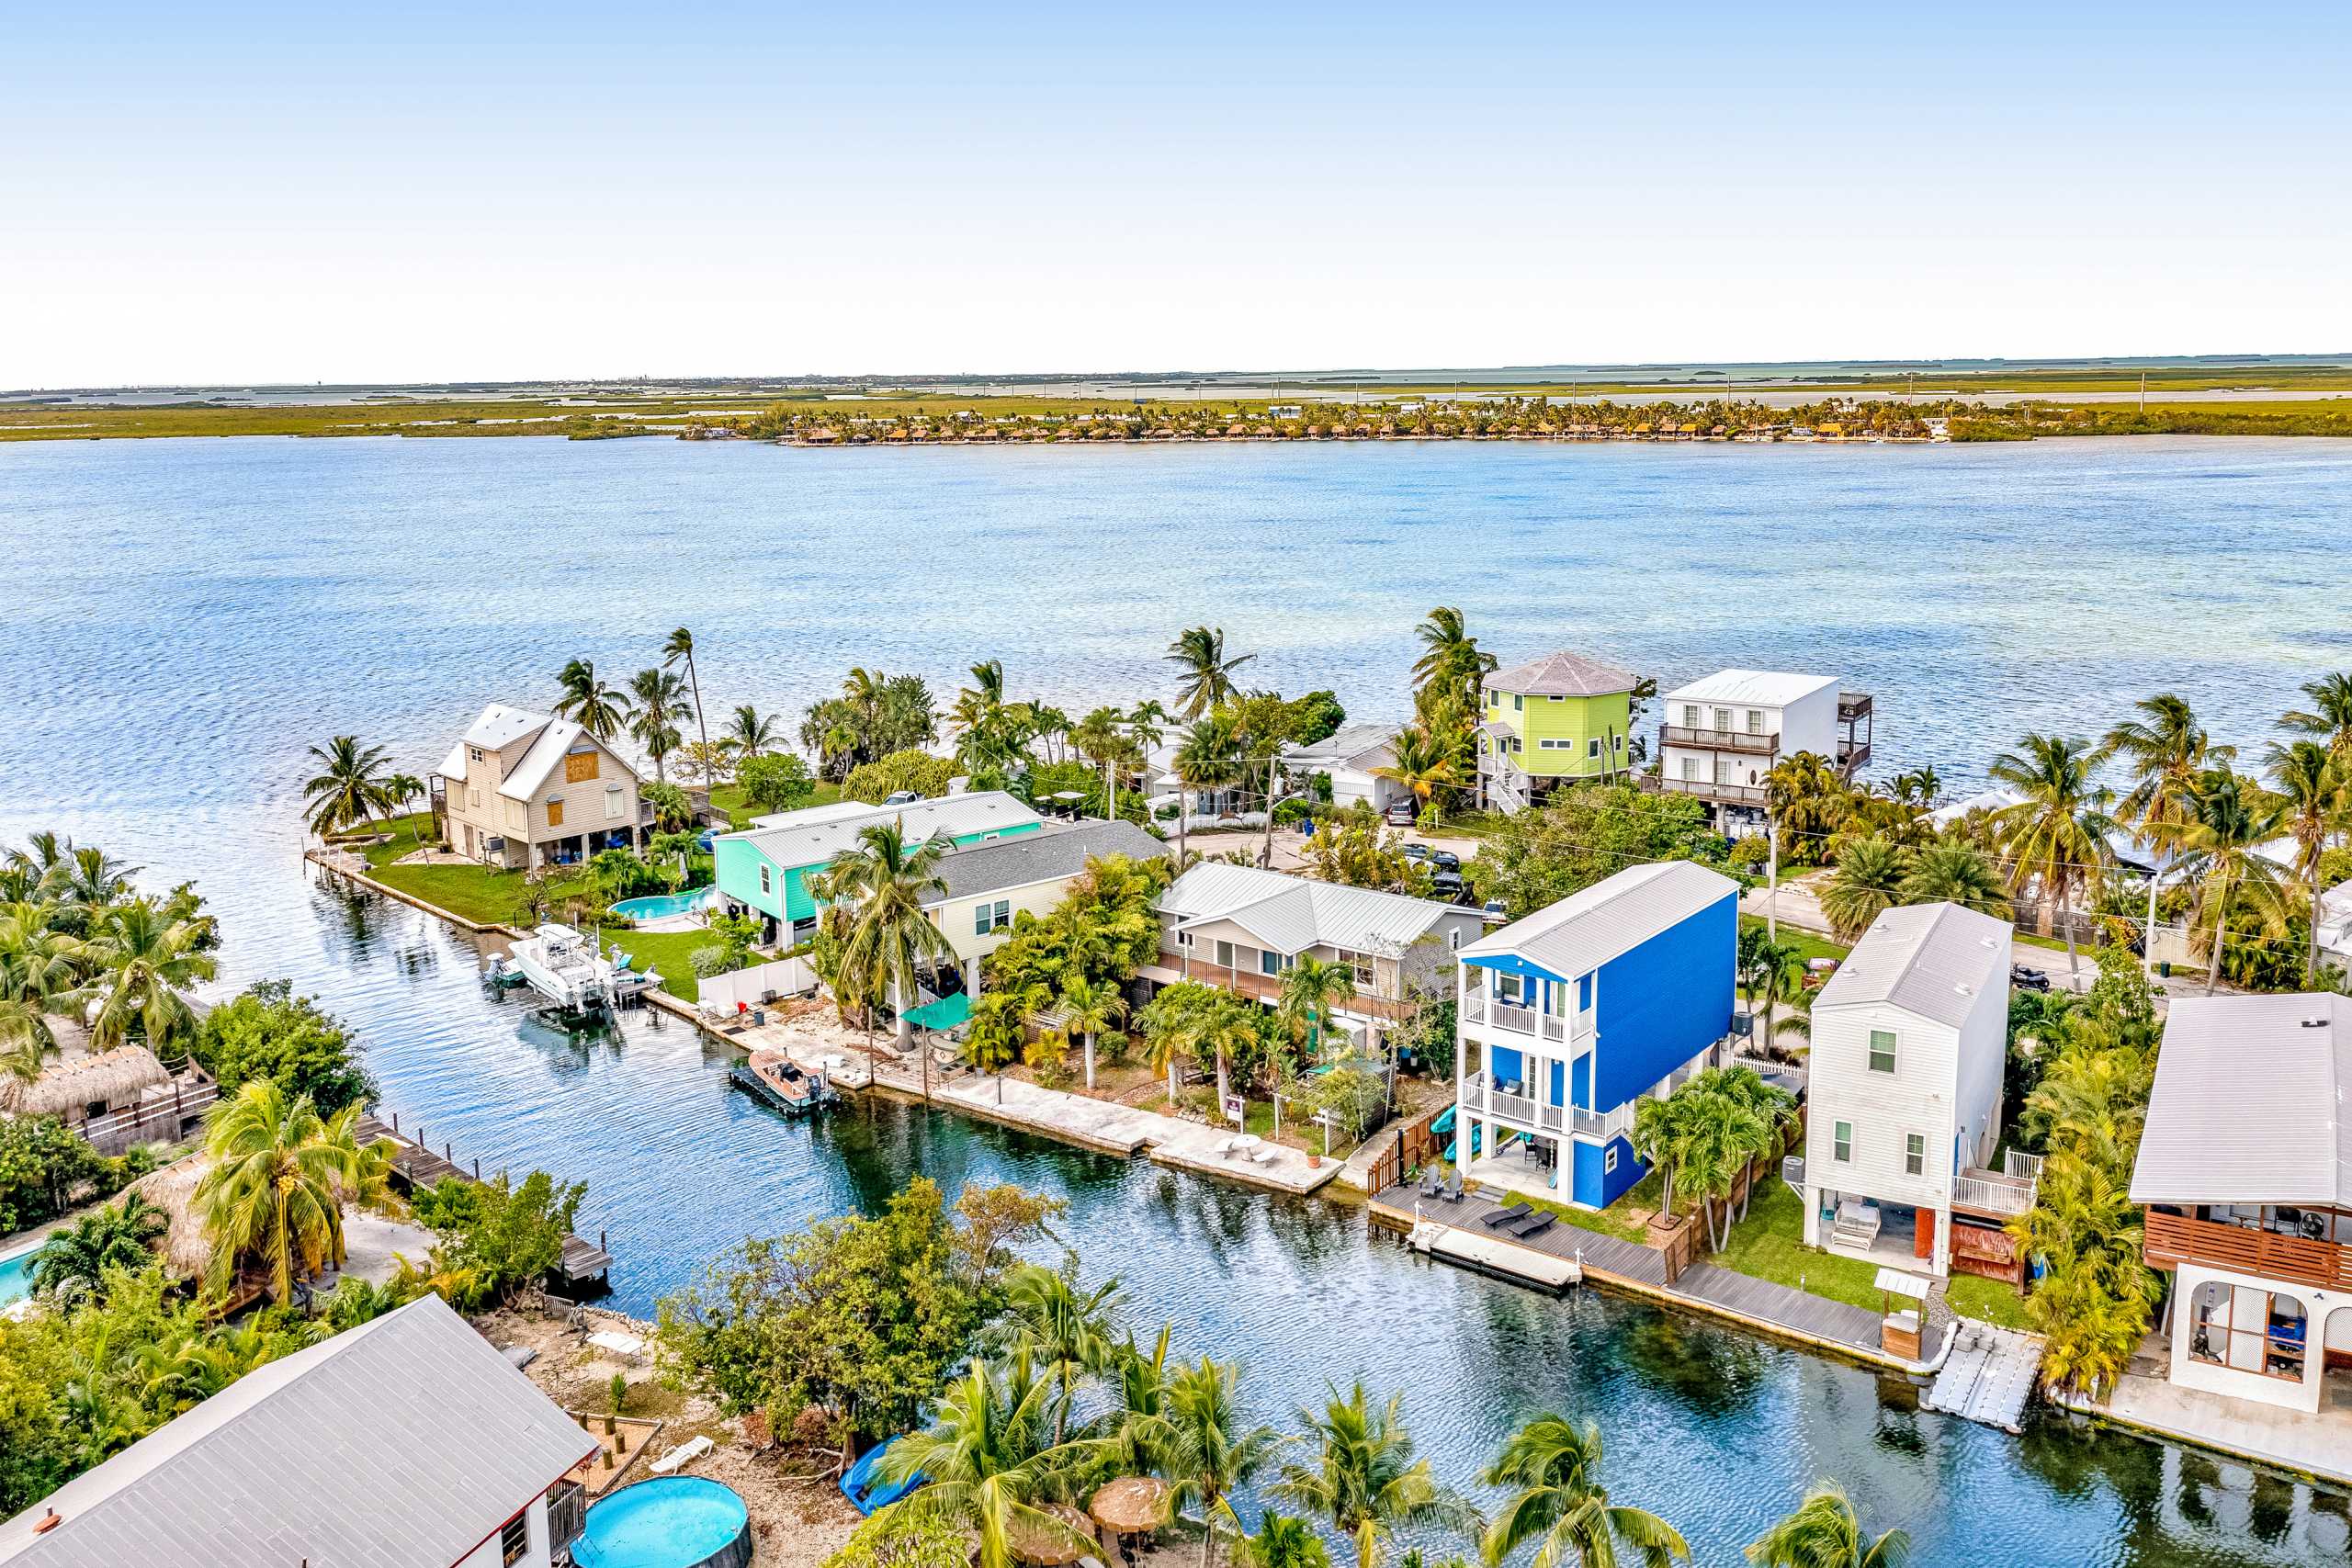 Live the Florida Keys Dream